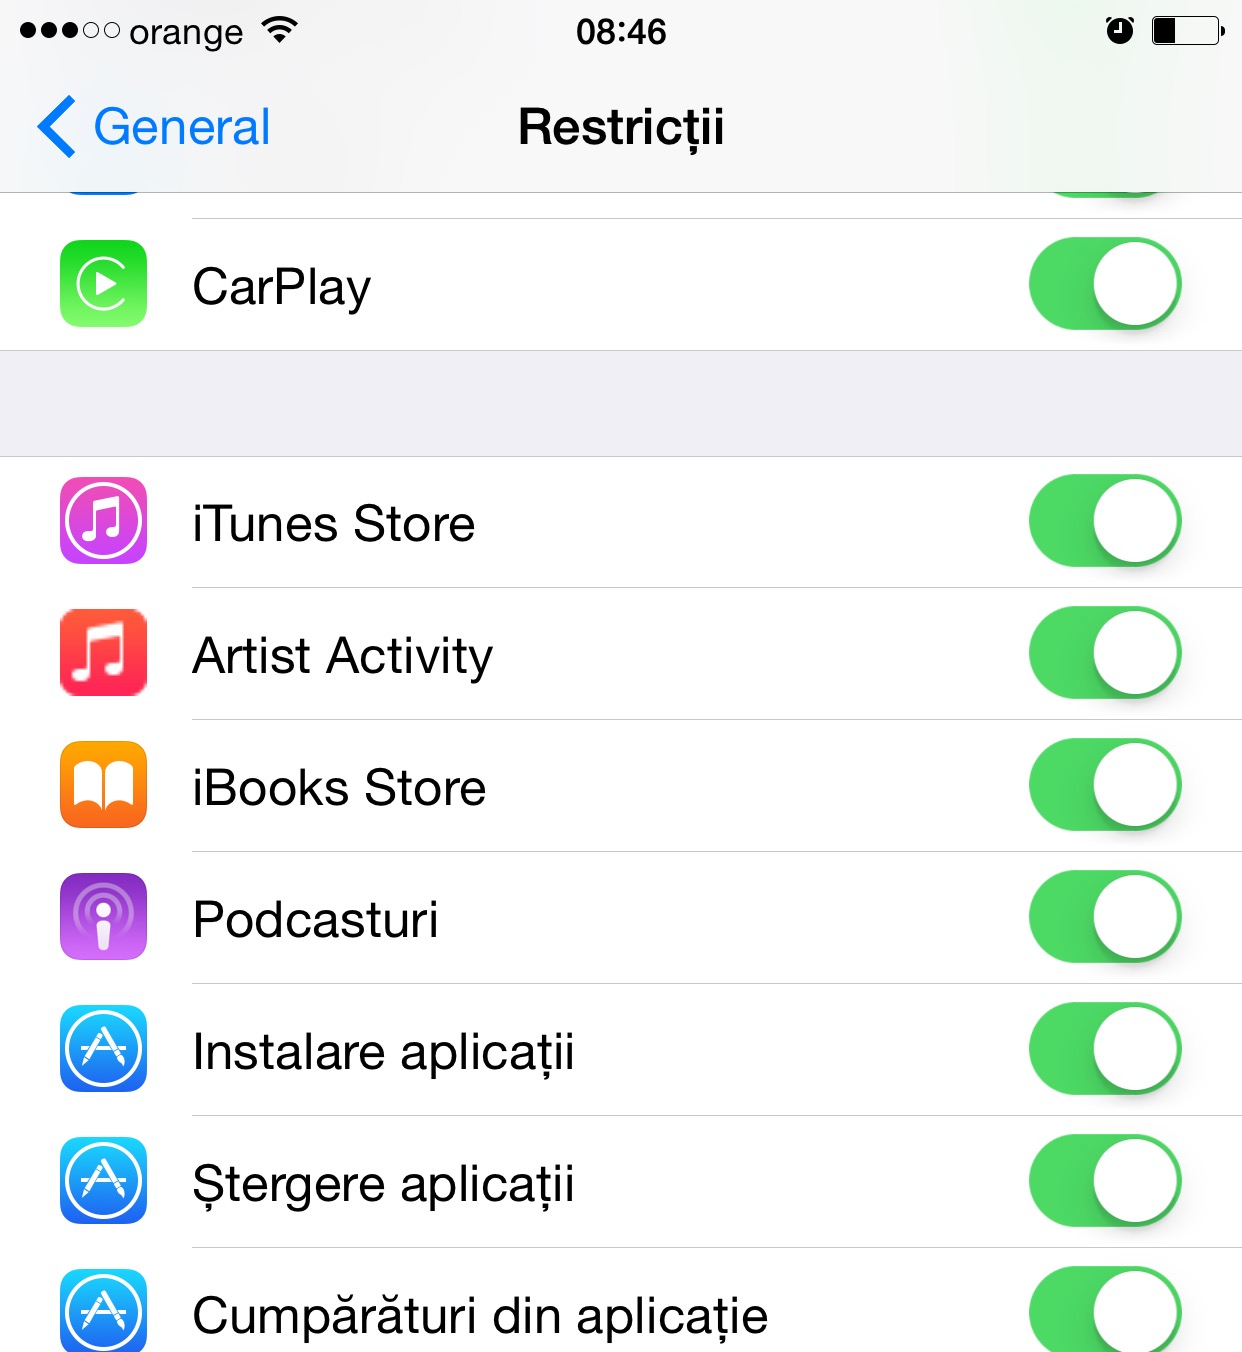 Apple Music iOS 8.4 Künstleraktivität